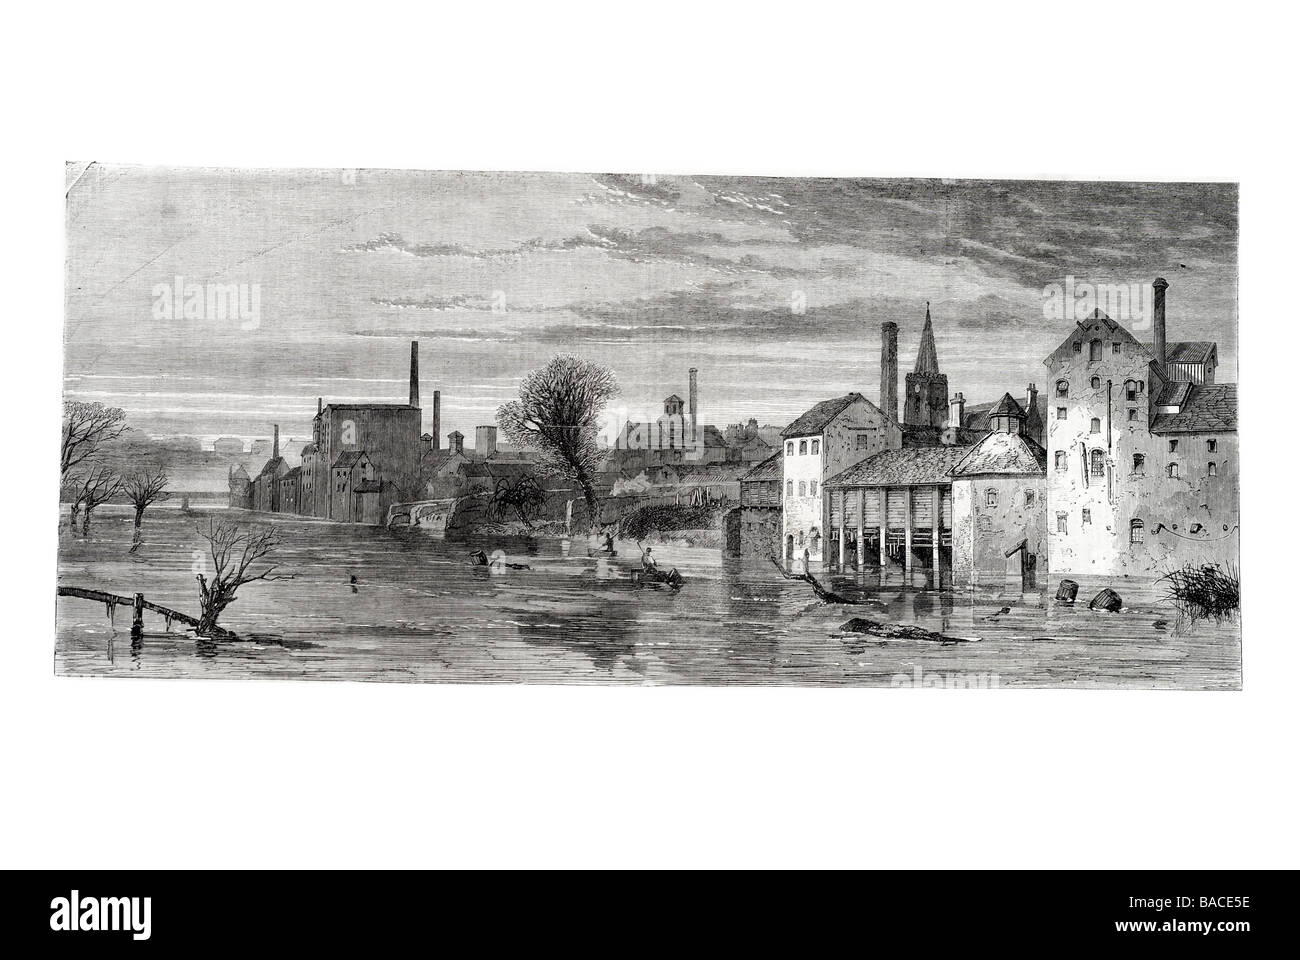 die großen Überschwemmungen in Yorkshire Blick auf Molton 1867 Flut Wasser Überschwemmungen Stockfoto